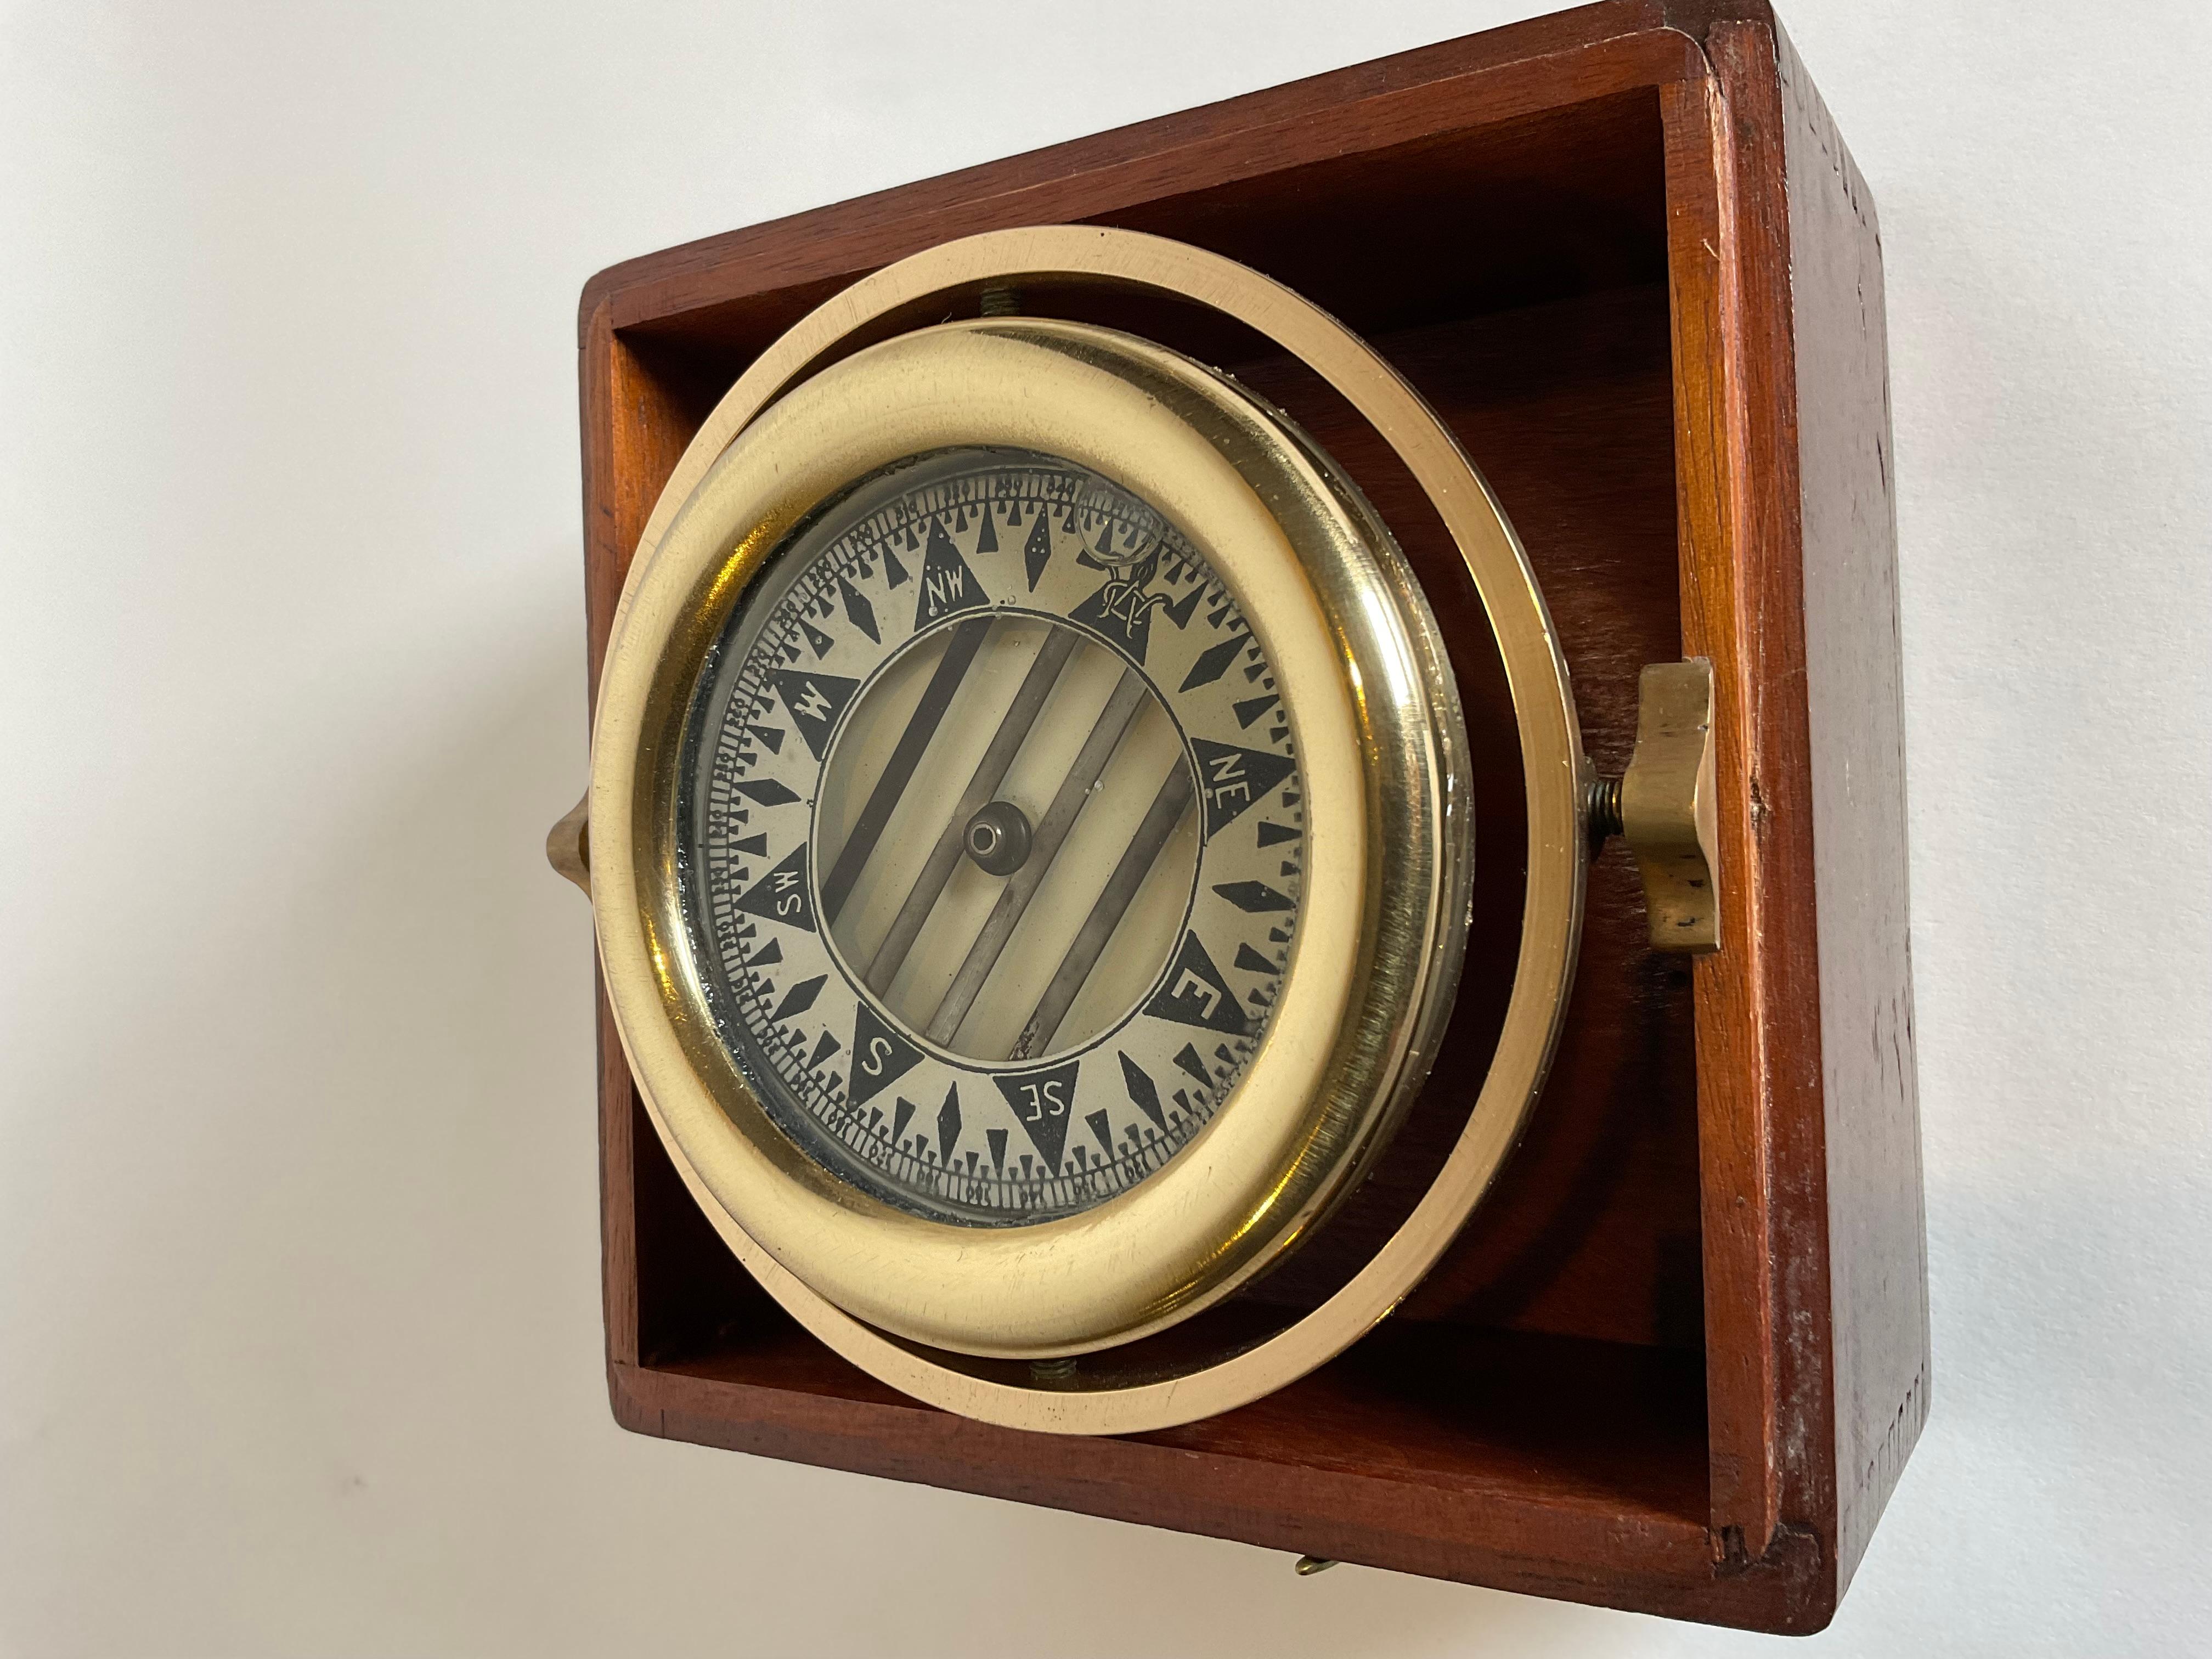 Wilcox Crittenden Boat Compass in Mahogany Box 1